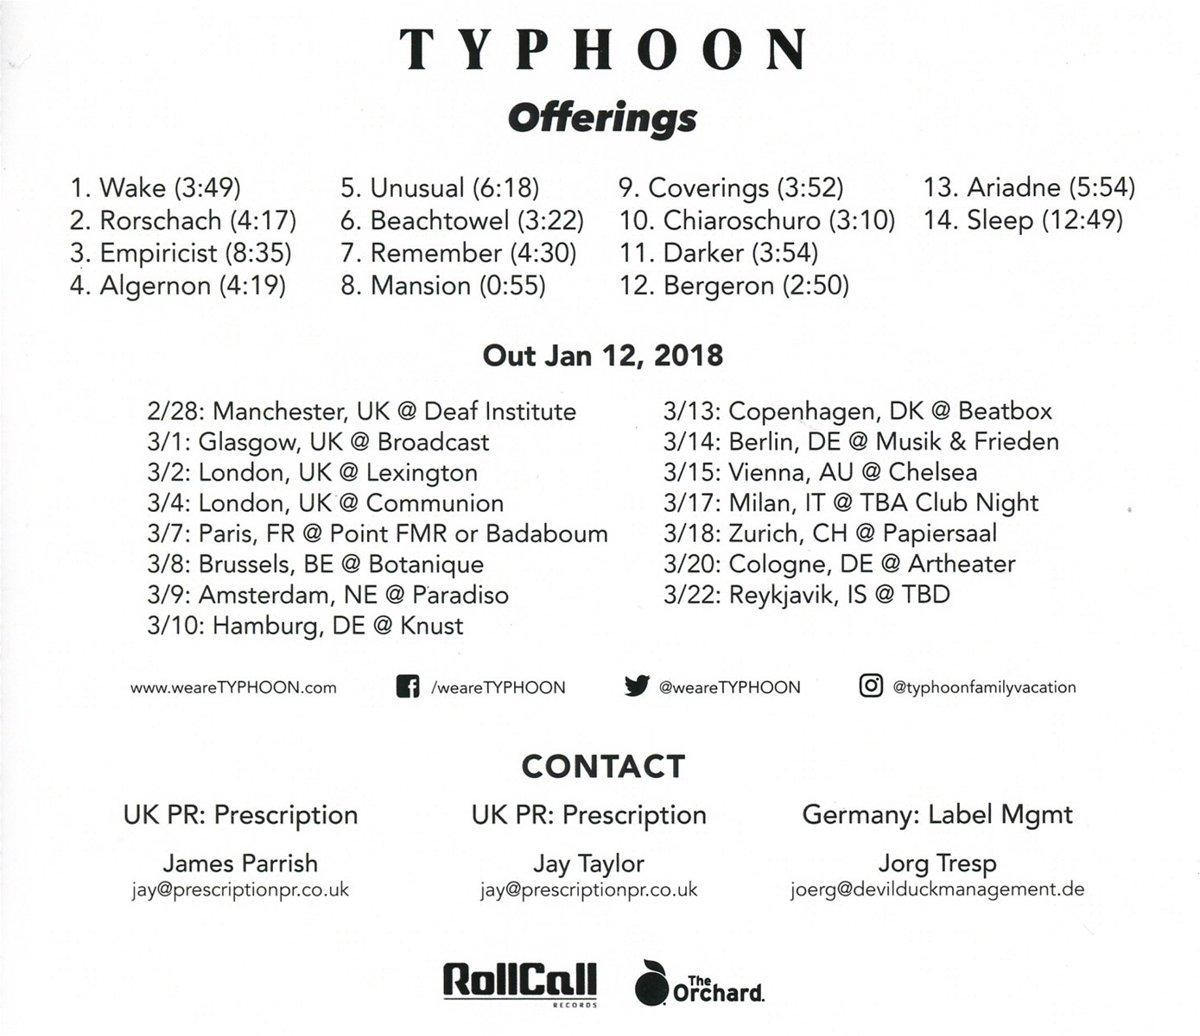 Typhoon - Offerings - (CD)